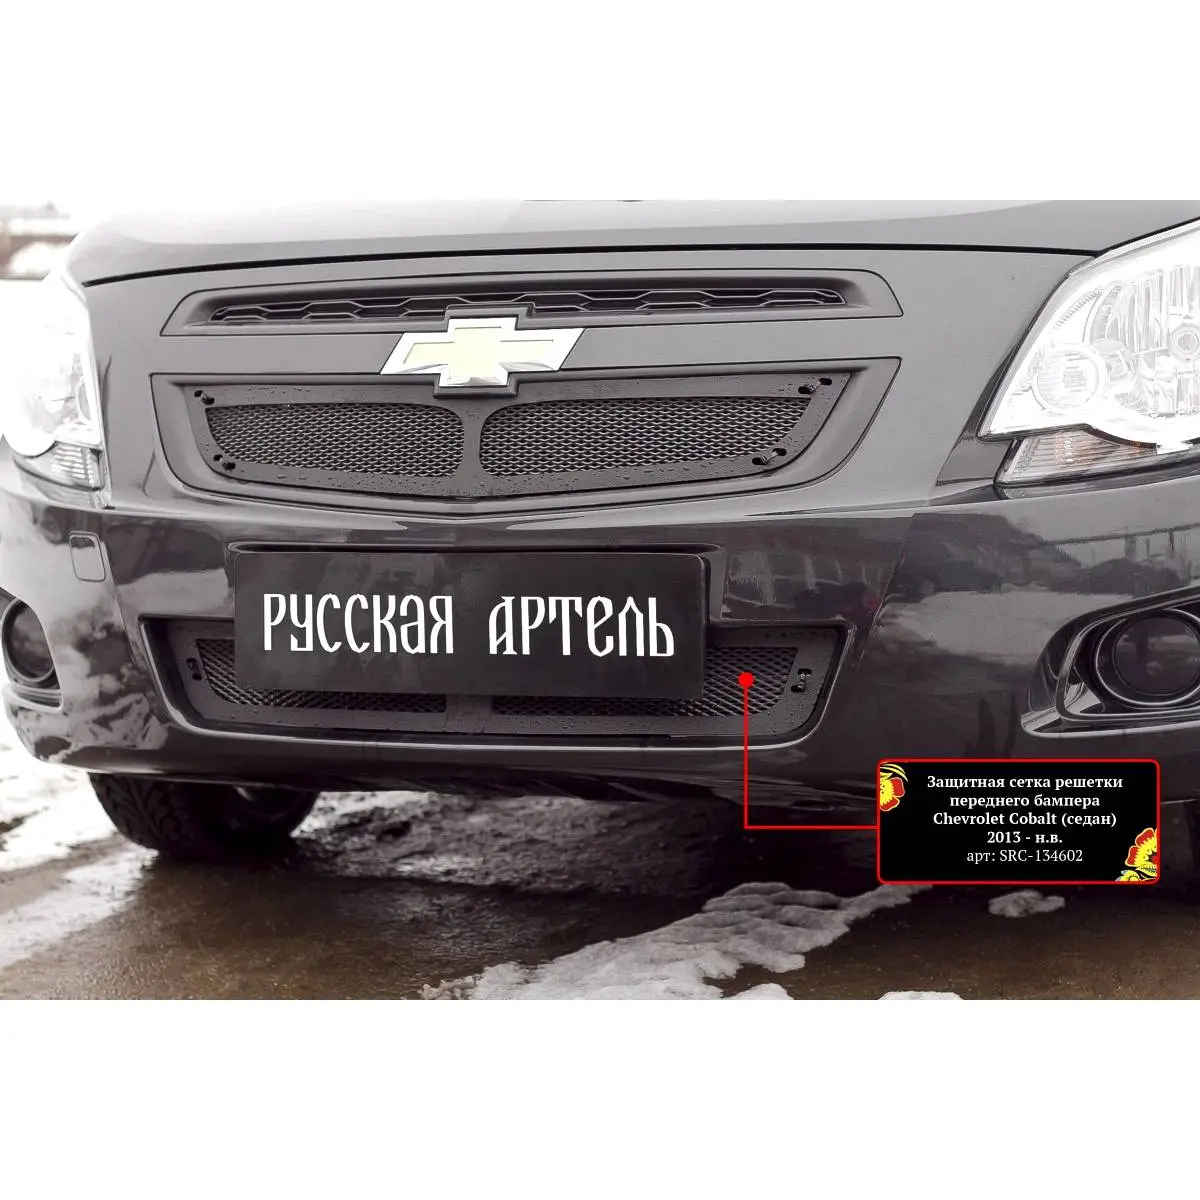 Защитная сетка решетки переднего бампера шагрень Russkaya Artel X CFX4 src134602 XDTGY 1437114696 изображение 6